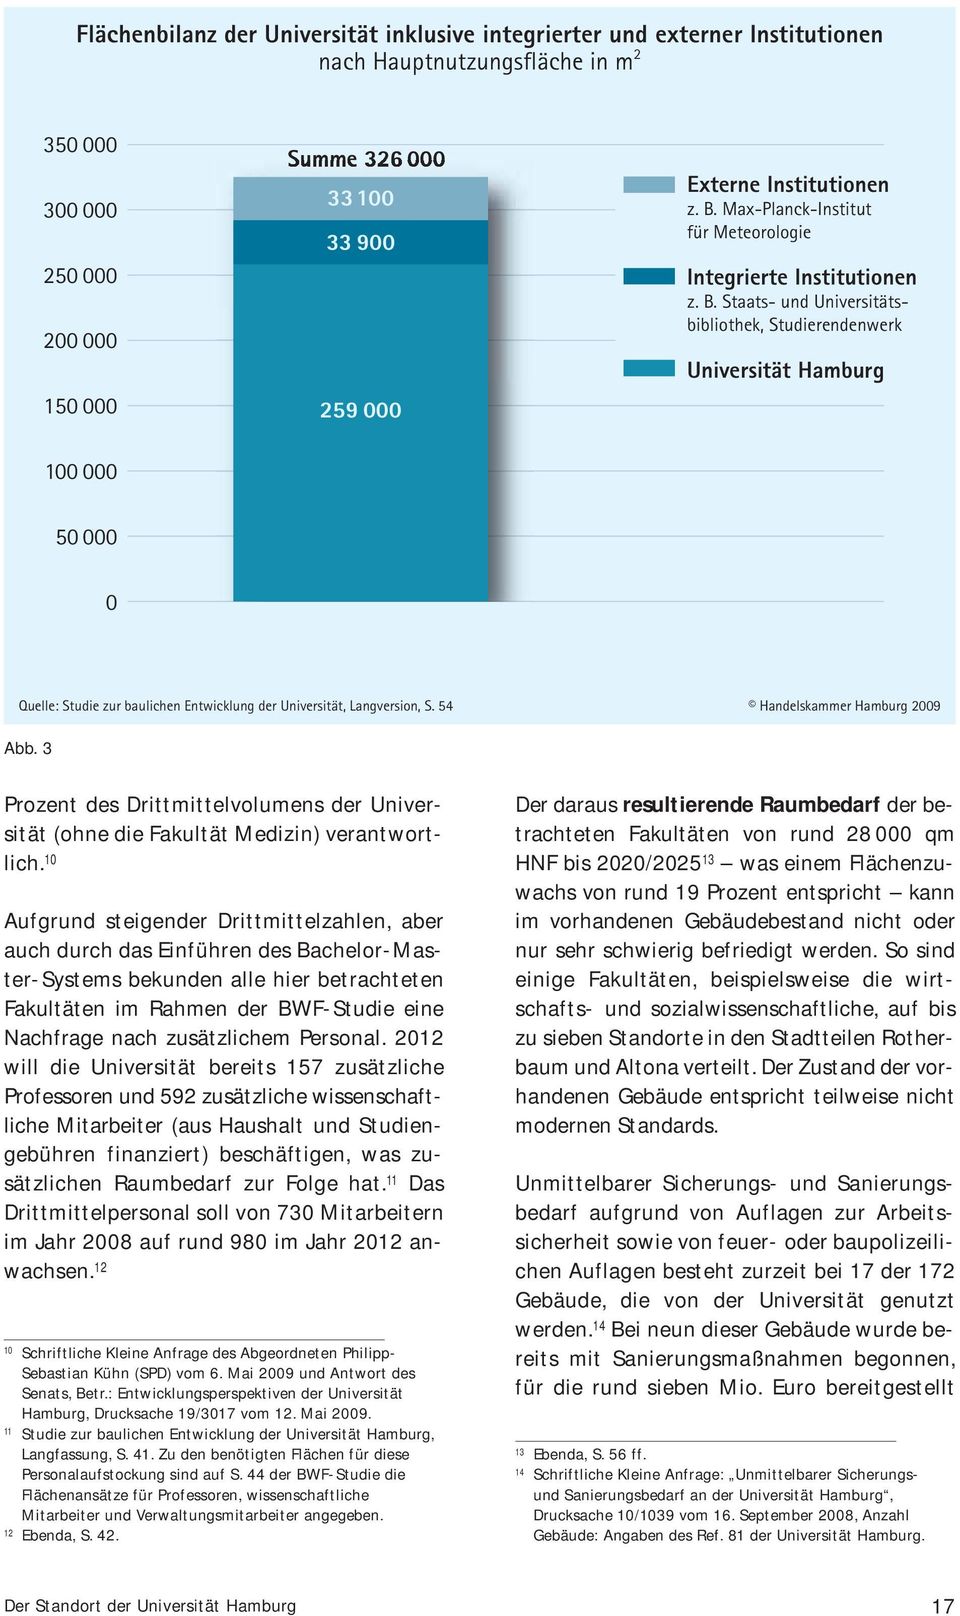 54 Handelskammer Hamburg 2009 Abb. 3 Prozent des Drittmittelvolumens der Universität (ohne die Fakultät Medizin) verantwortlich.